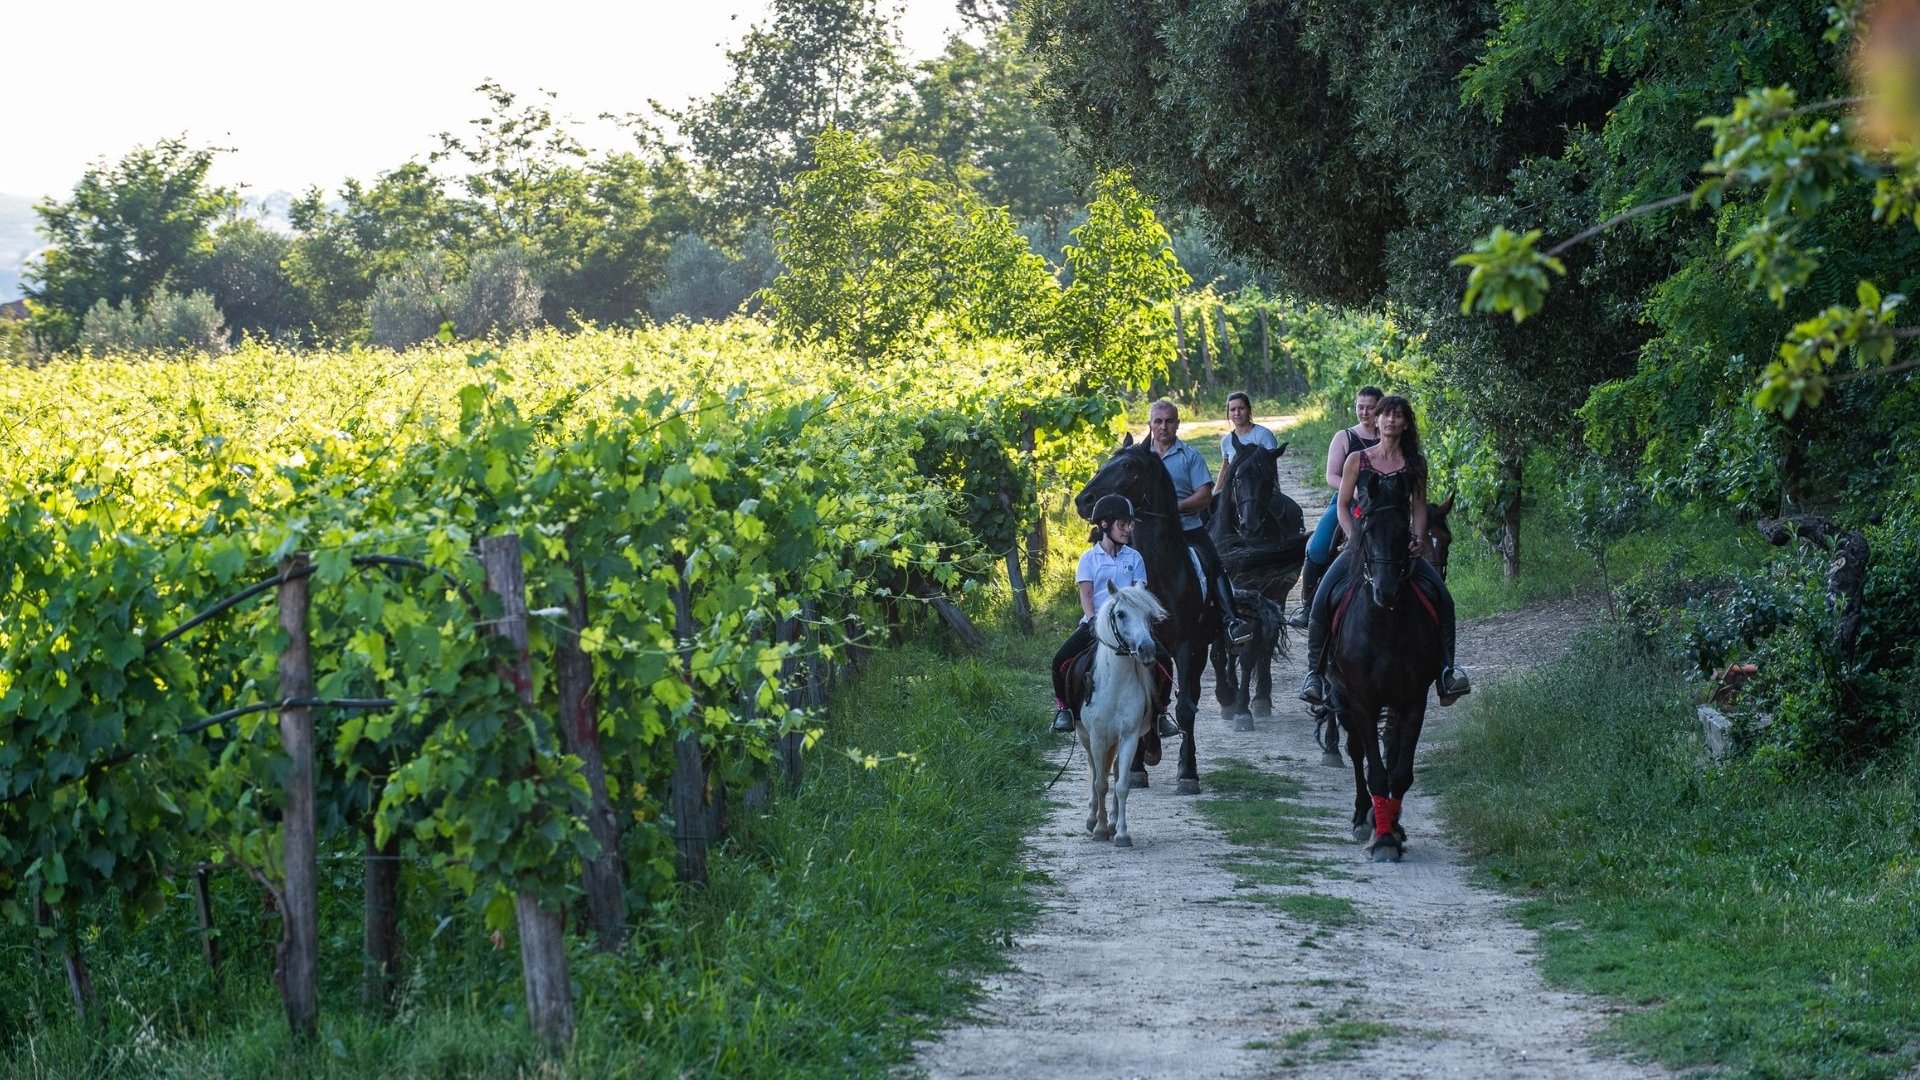 Un percorso ad anello alla scoperta dei sentieri e delle leggende della Valdichiana, territorio nel cuore della Toscana.